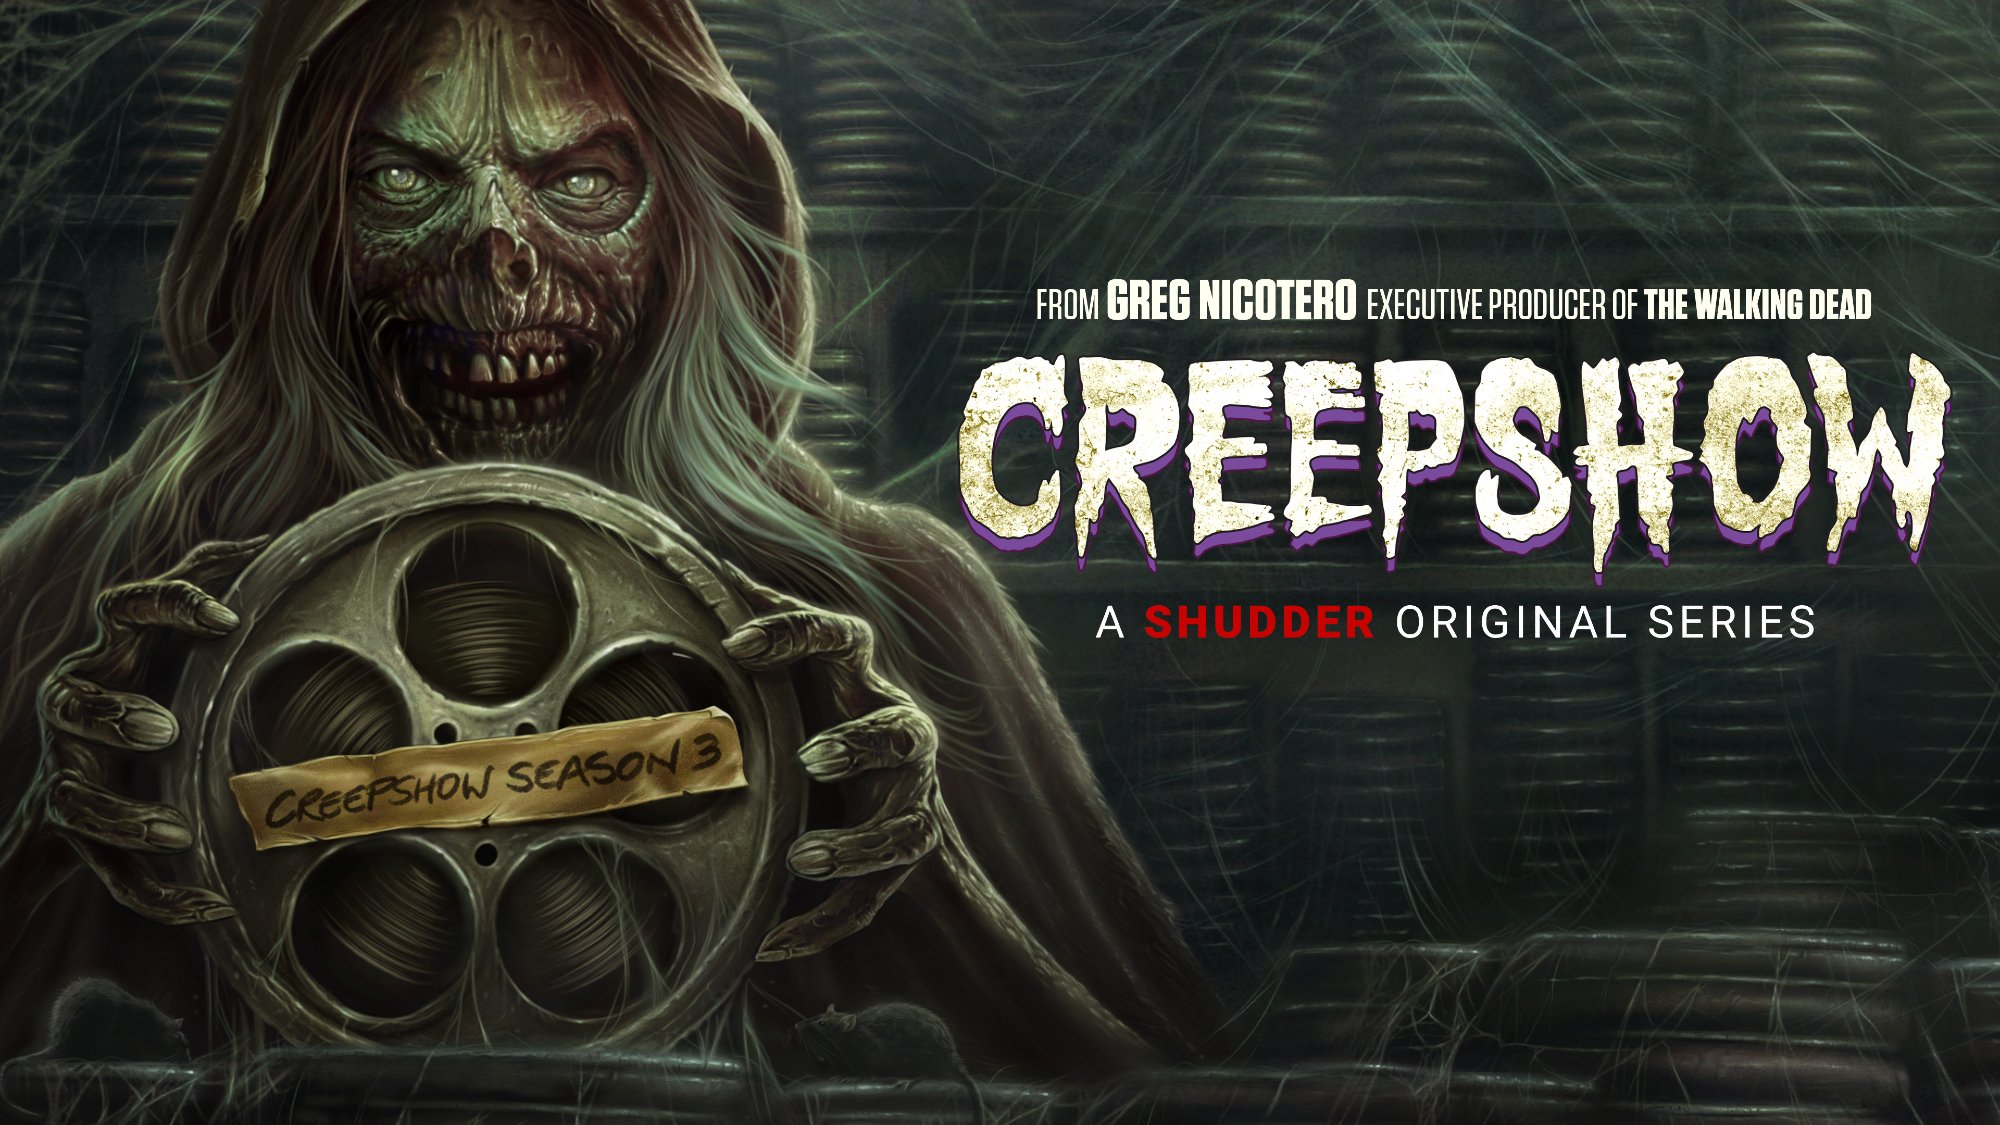 Shudder's Creepshow Season 3 promo banner art